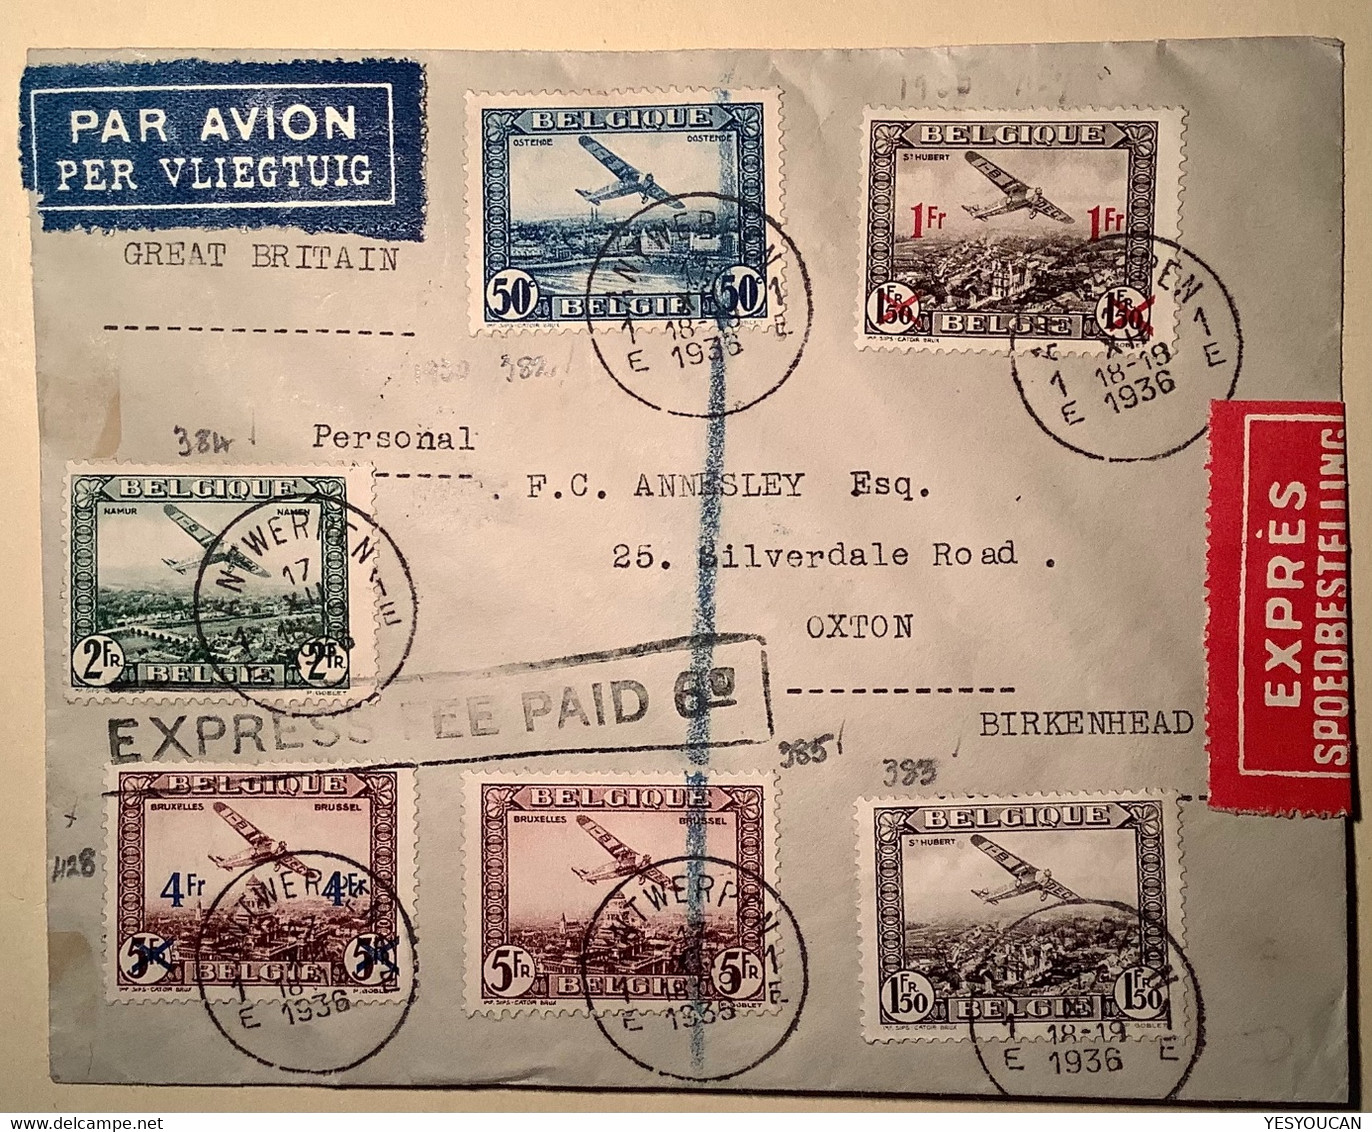 EXPRÉS „EXPRESS FEE PAID 6d“ ANTWERPEN1936par Avion Cover>Birkenhead GB (Belgique Poste Aérienne Lettre Air Mail Belgium - Other & Unclassified